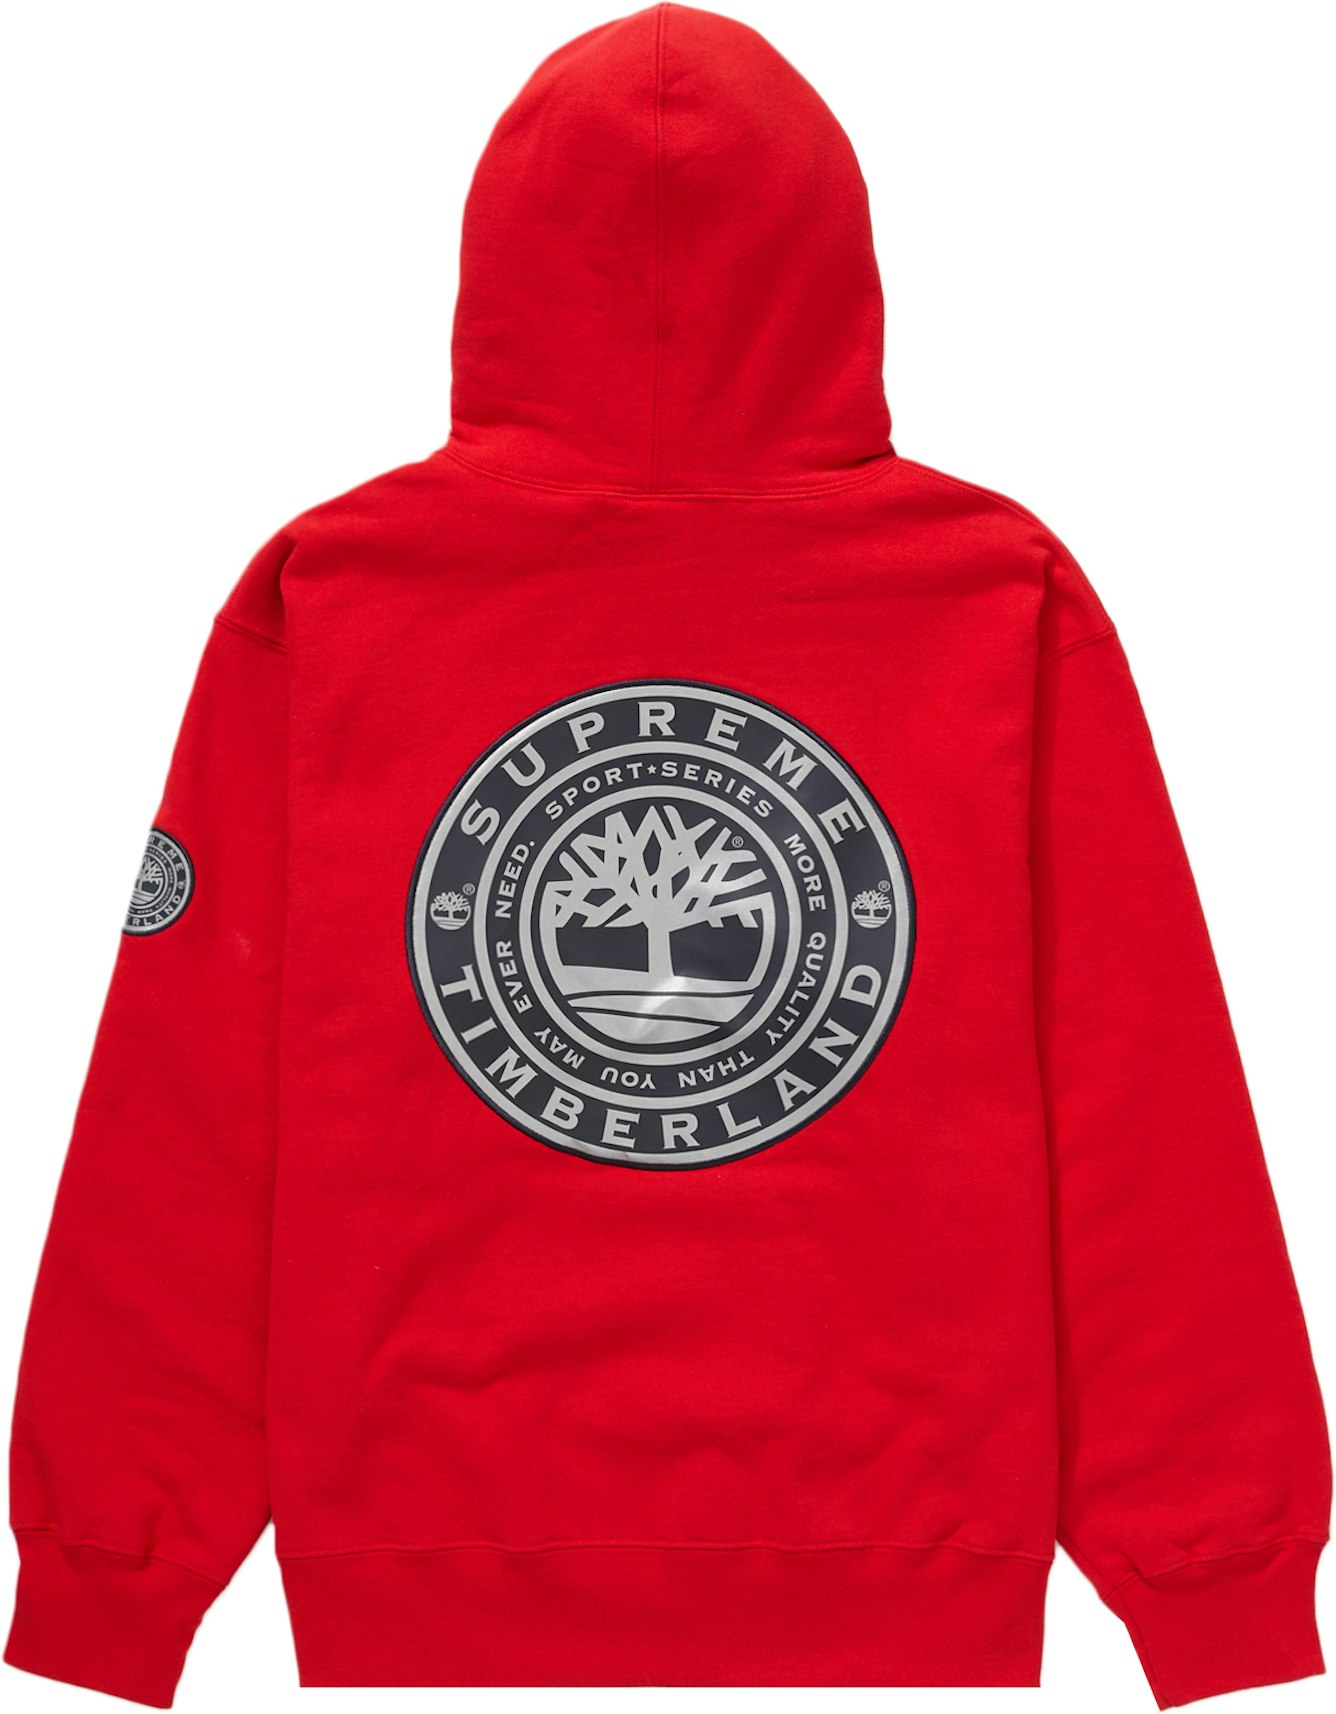 Bestuurbaar Absurd Opvoeding Supreme Timberland Hooded Sweatshirt Red - FW21 Men's - US